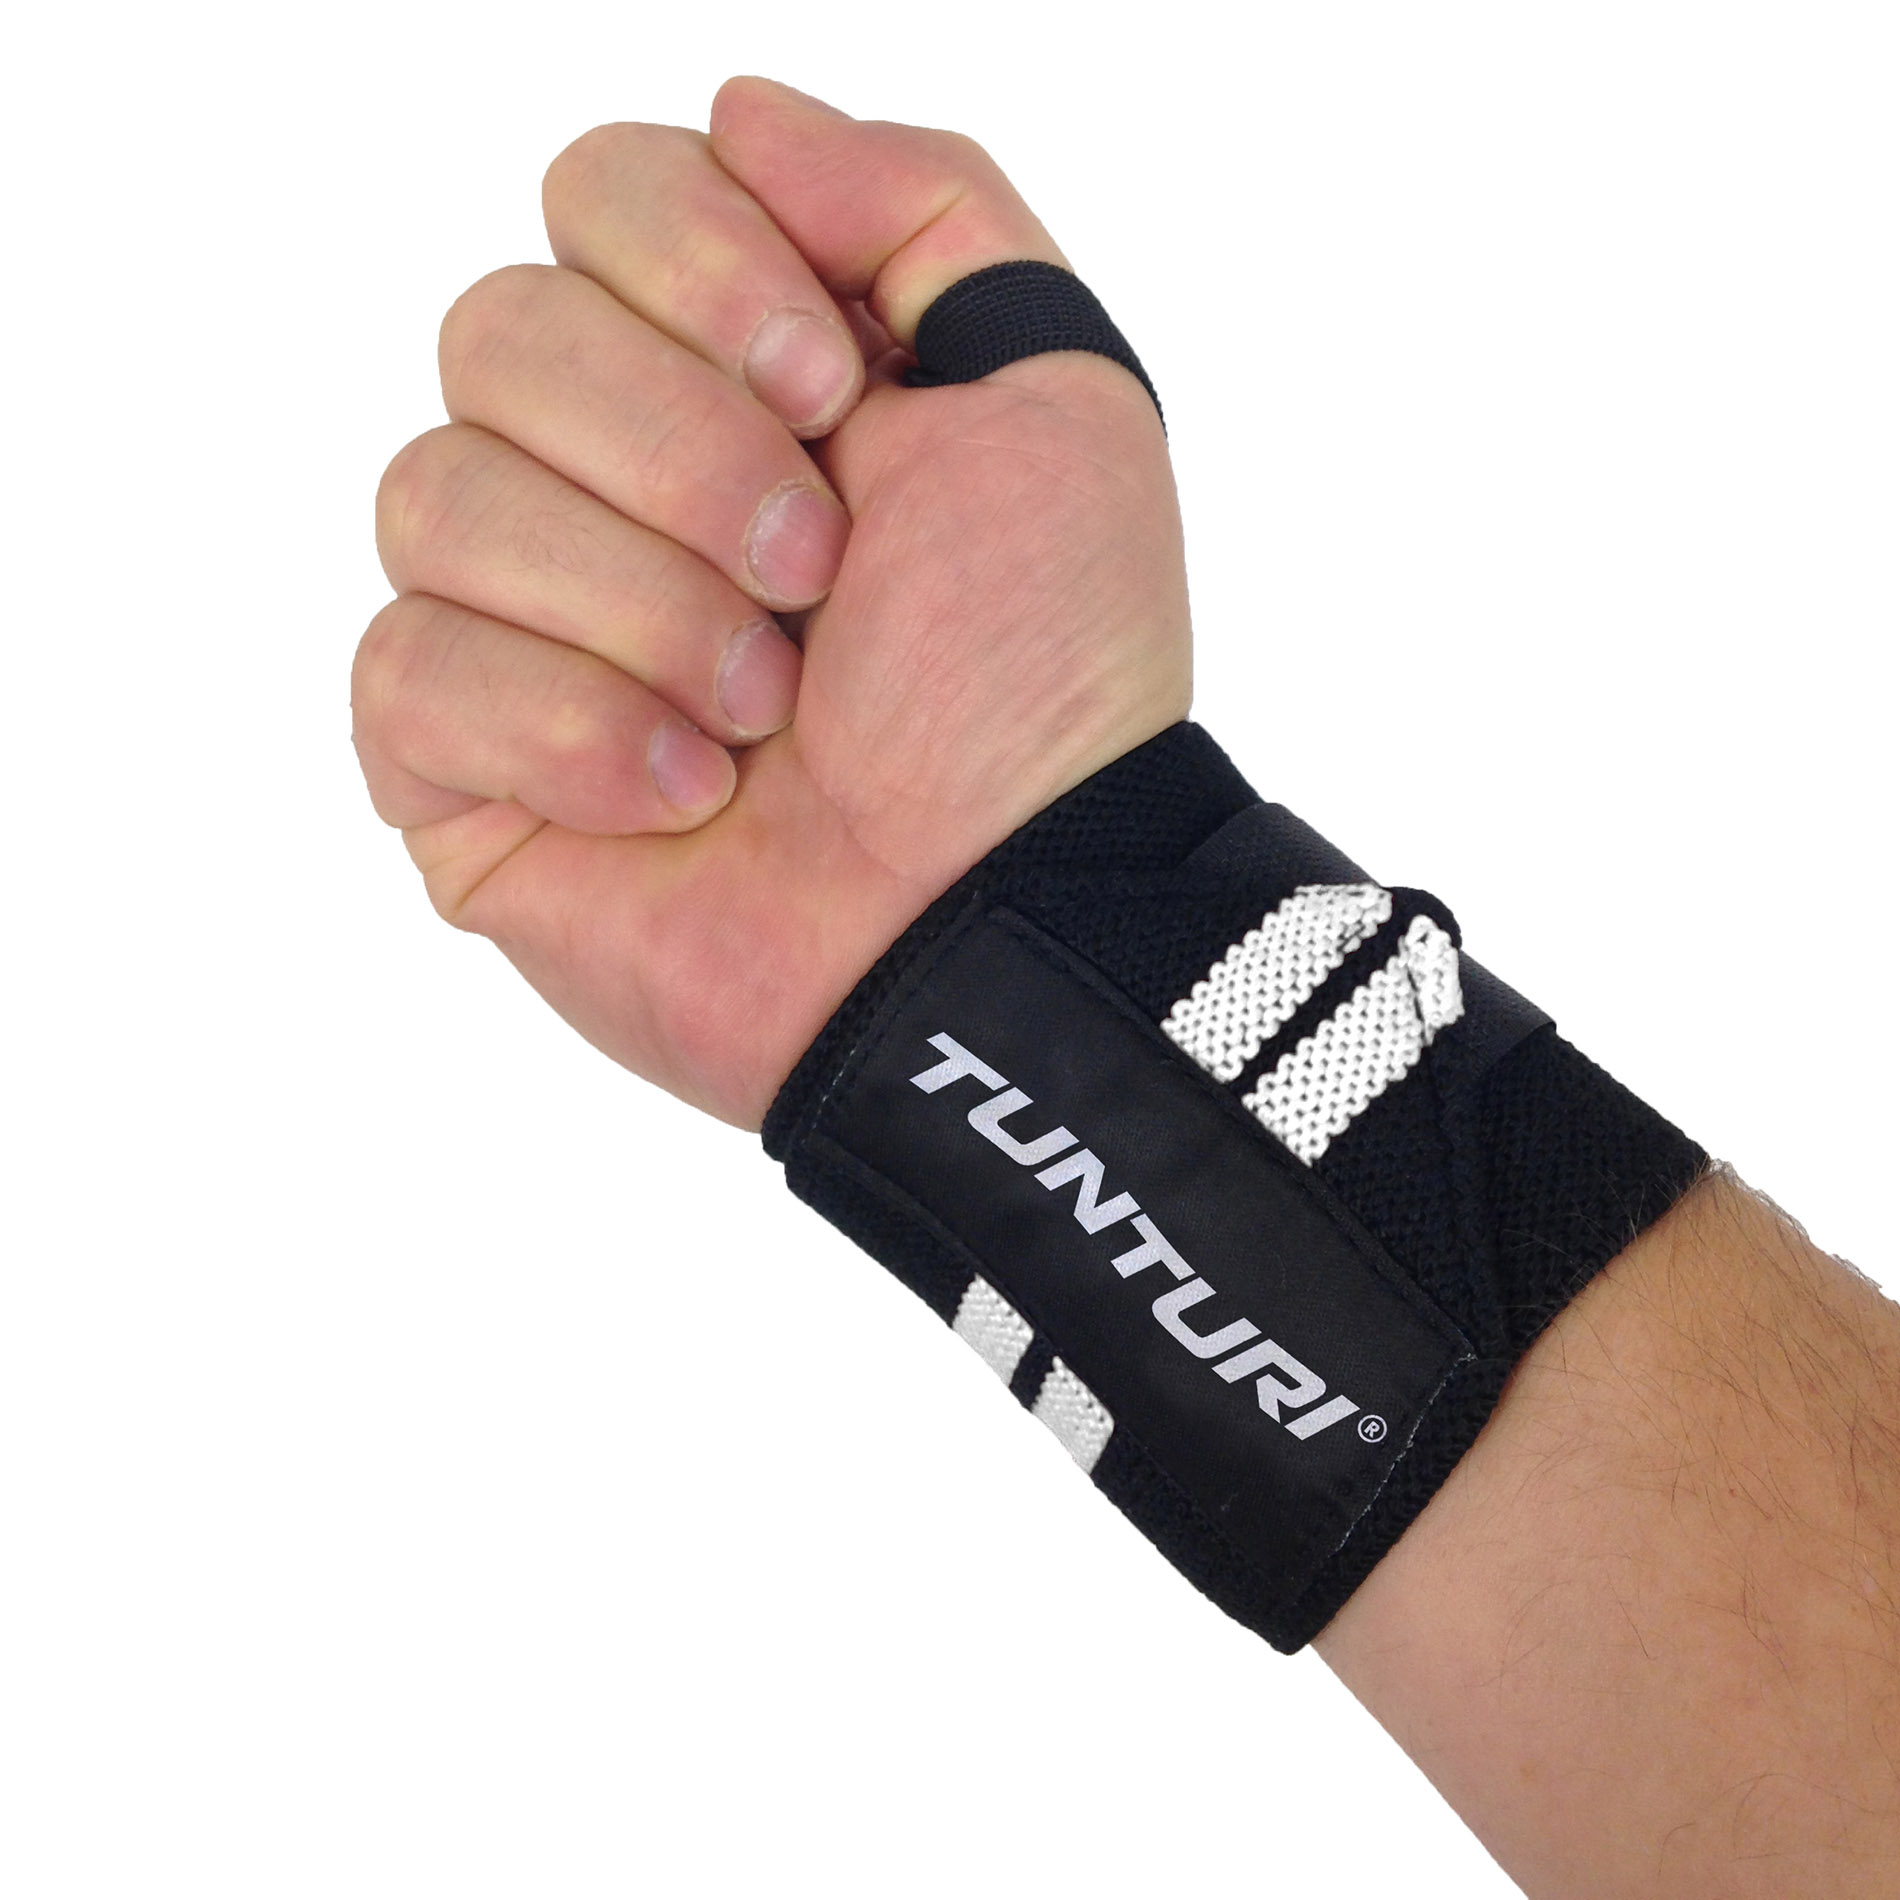 tijdschrift hoek Wijzerplaat Functional Training Wrist Wraps - Pols Wraps - Wit - per paar - Tunturi  Fitness